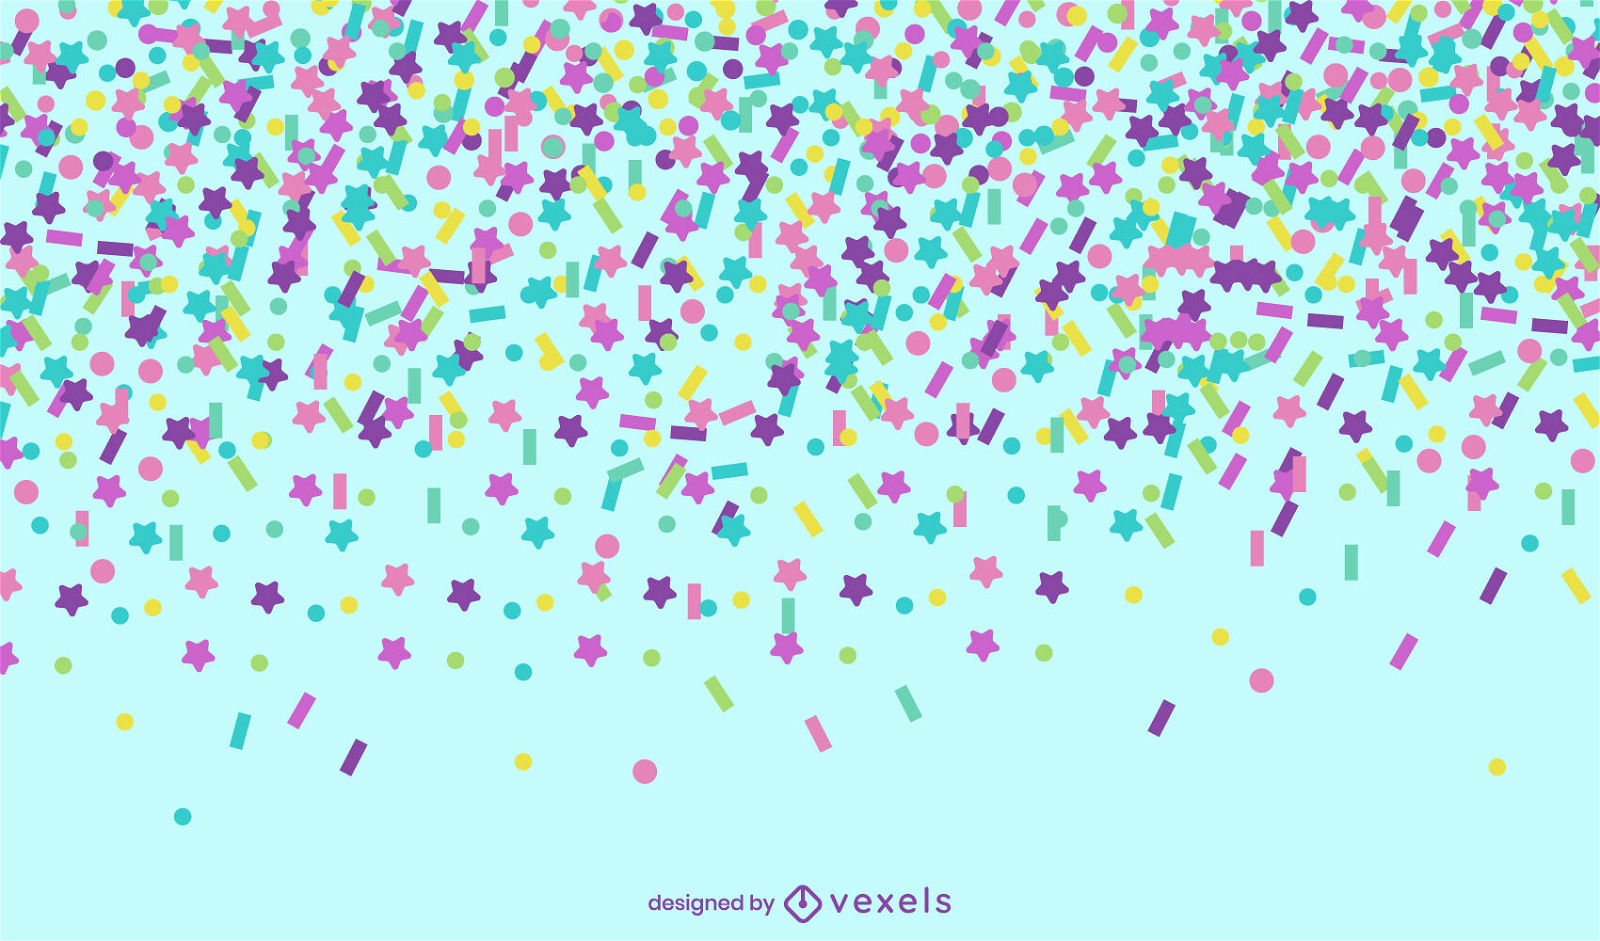 Star confetti celebration background design